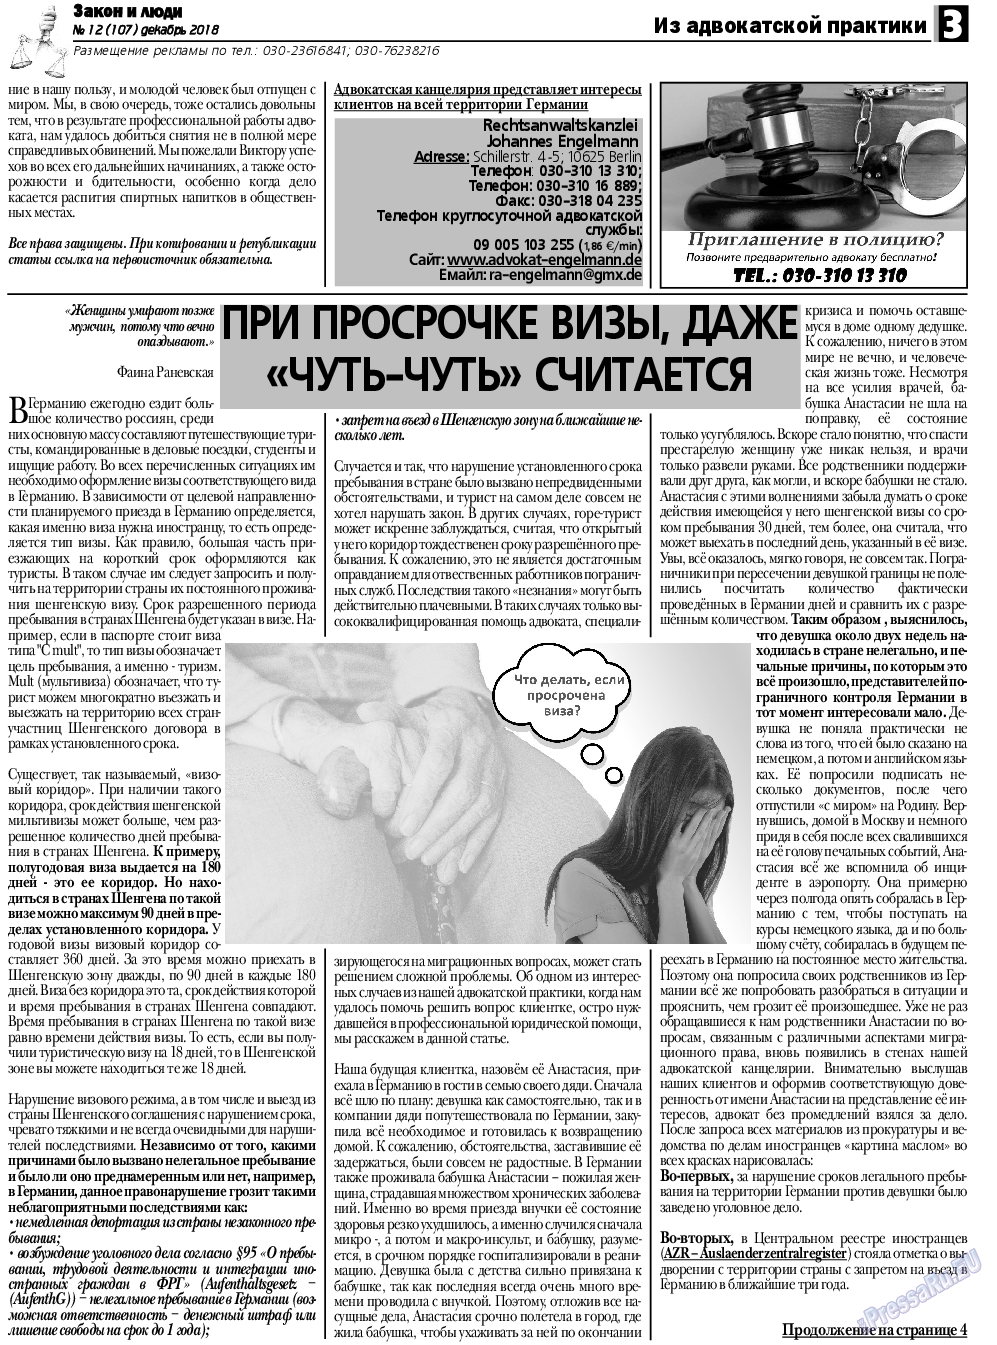 Закон и люди, газета. 2018 №12 стр.3